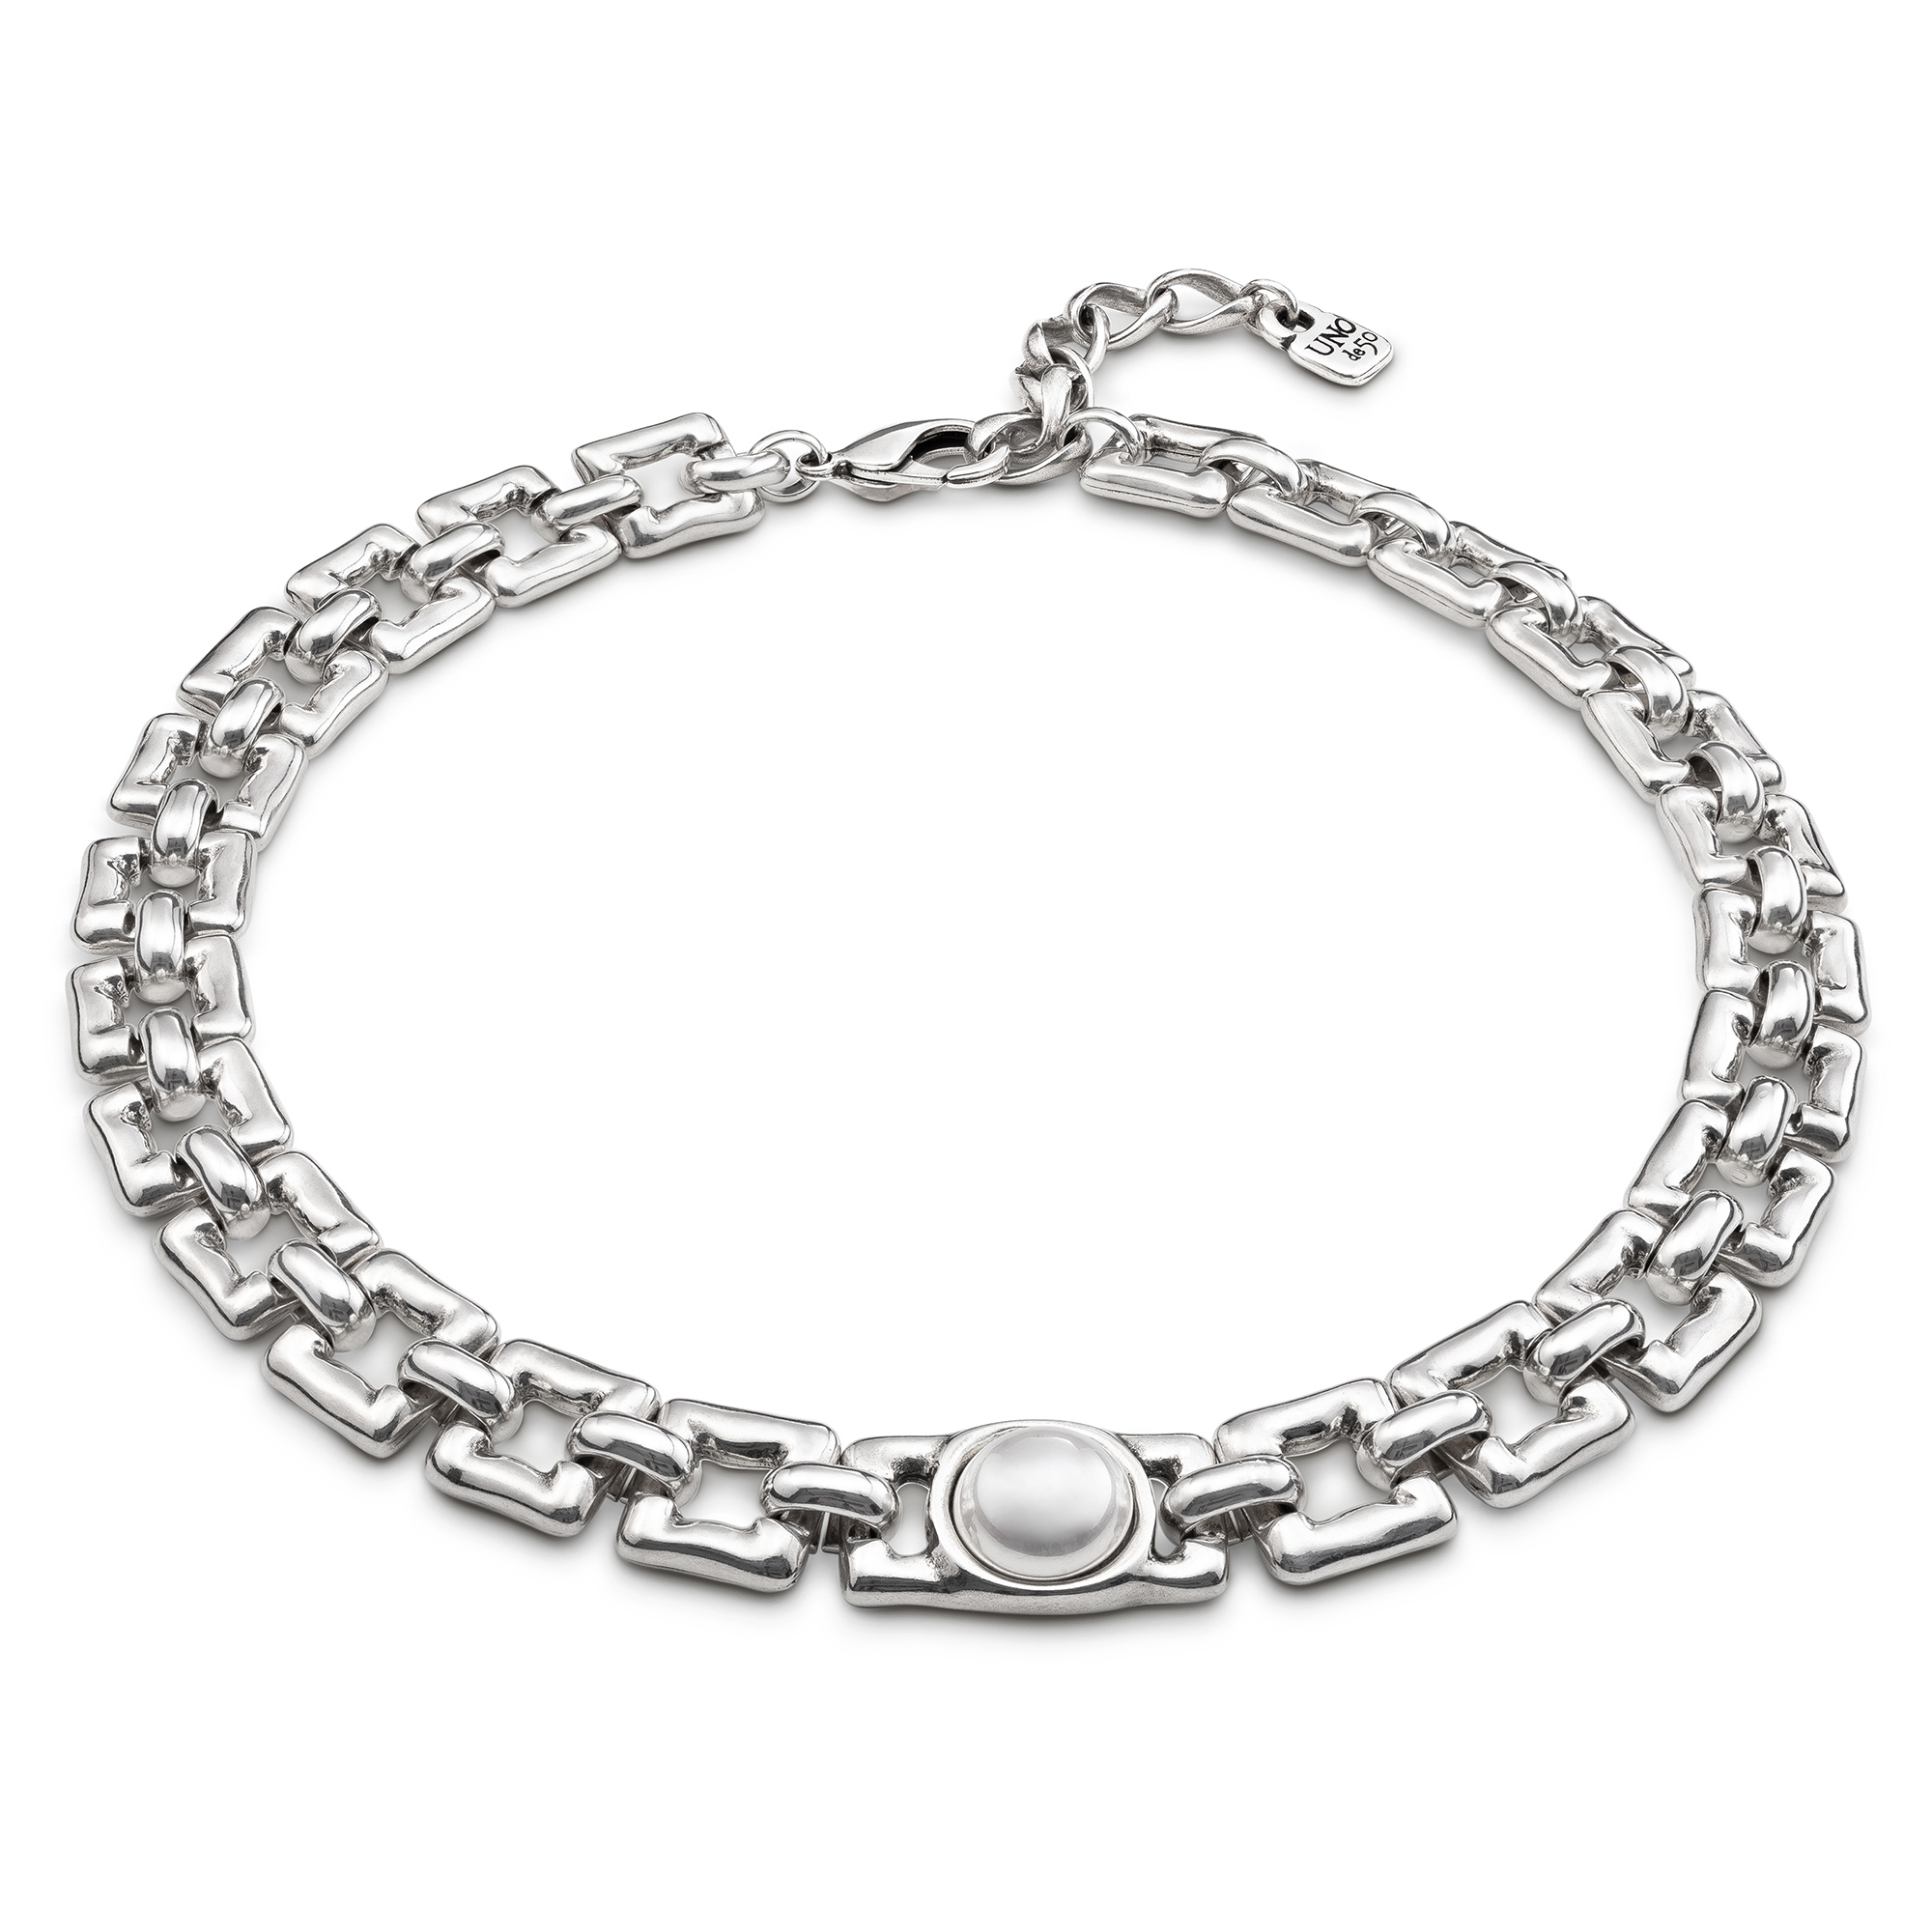 Купить Ожерелье Linda с серебром - Фото 9